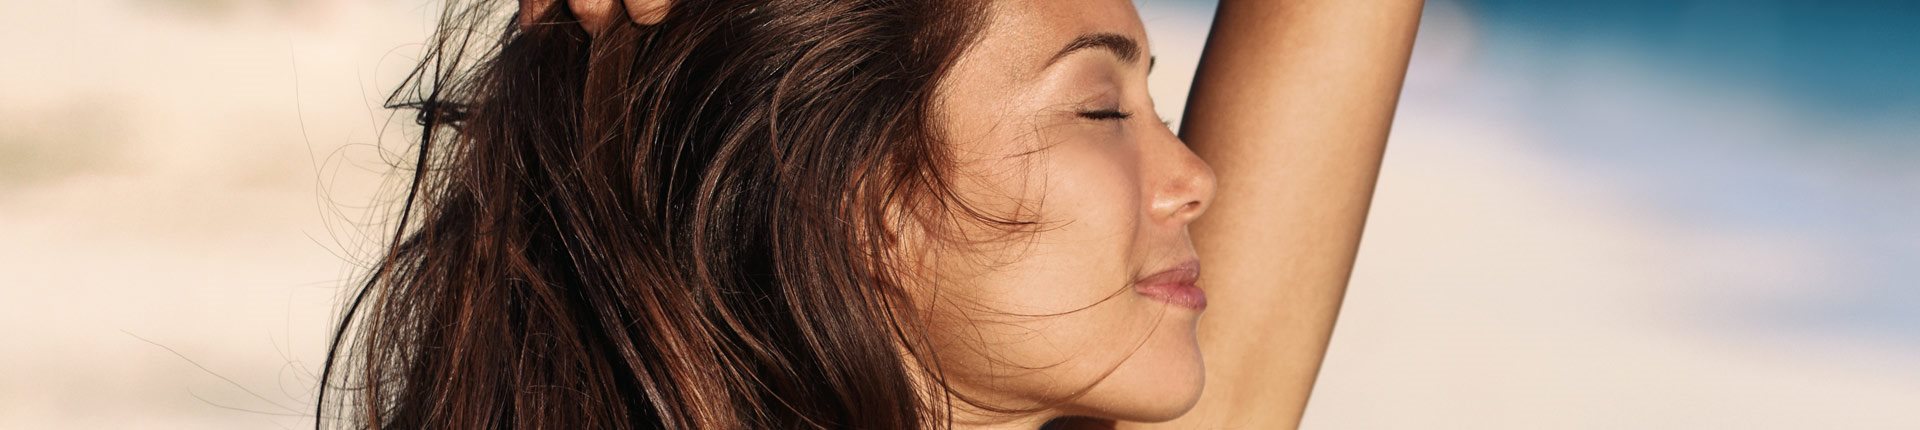 Jak słońce wpływa na skórę i twarz?